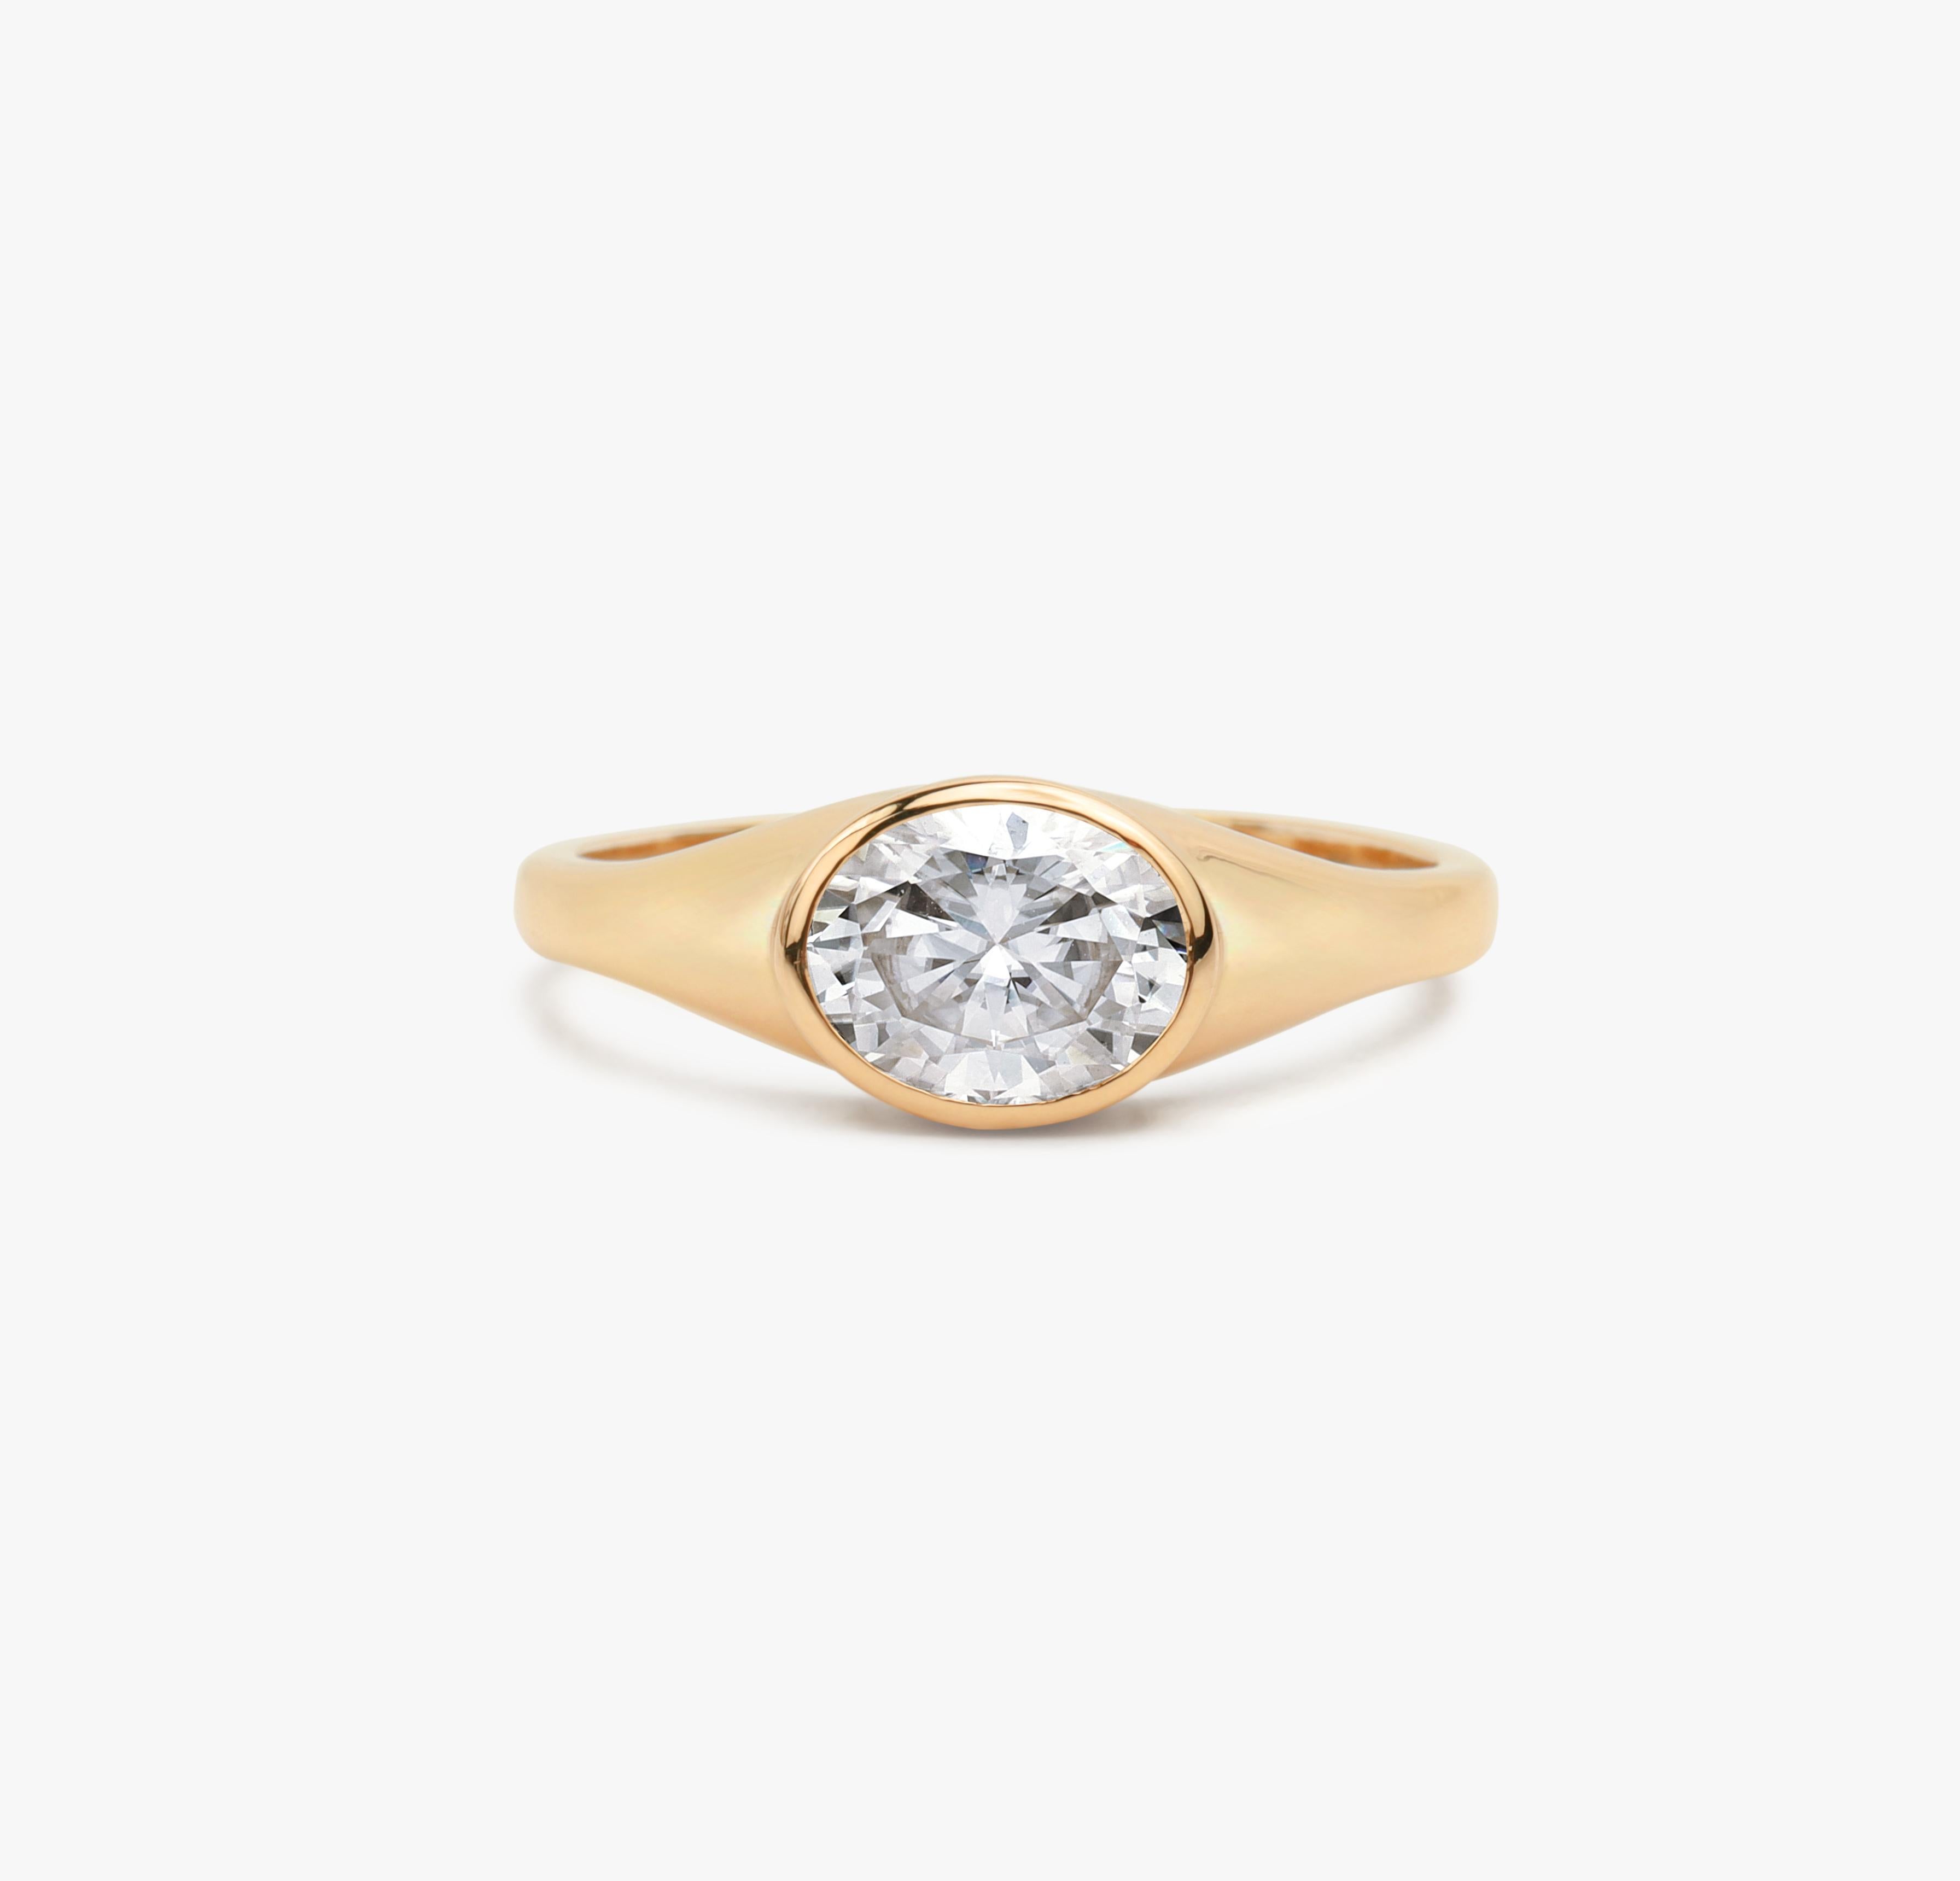 GIA Report Certified 2 Carat Oval Cut Diamond Signet Ring for Men and Women in 18k Solid Gold (Bague de chevalière pour hommes et femmes en or massif 18k) 

Disponible en or jaune 18 carats.

Le même design peut être réalisé avec d'autres pierres